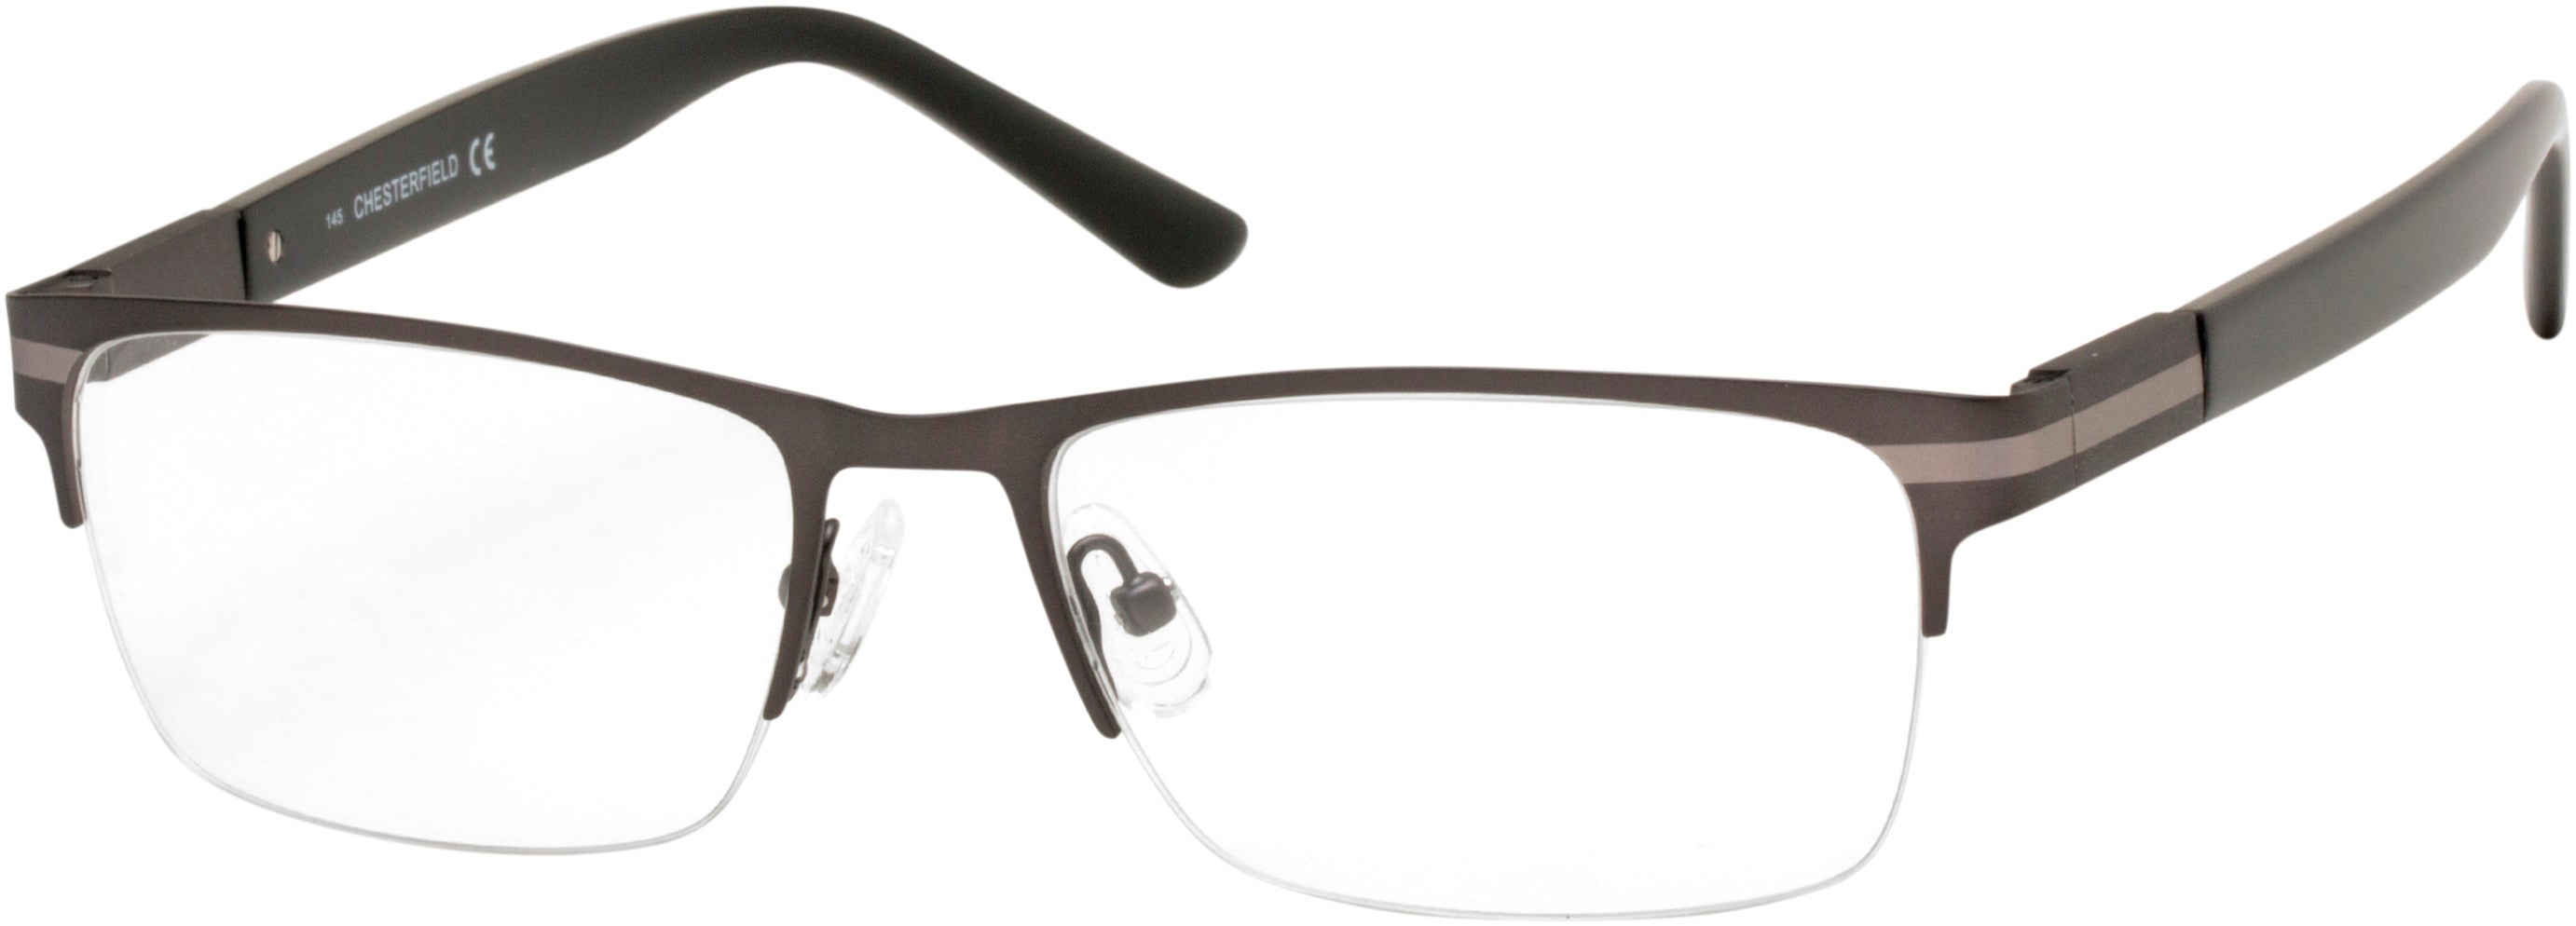  Chesterfield 62XL Rectangular Eyeglasses 0FRE-0FRE  Matte Gray (00 Demo Lens)